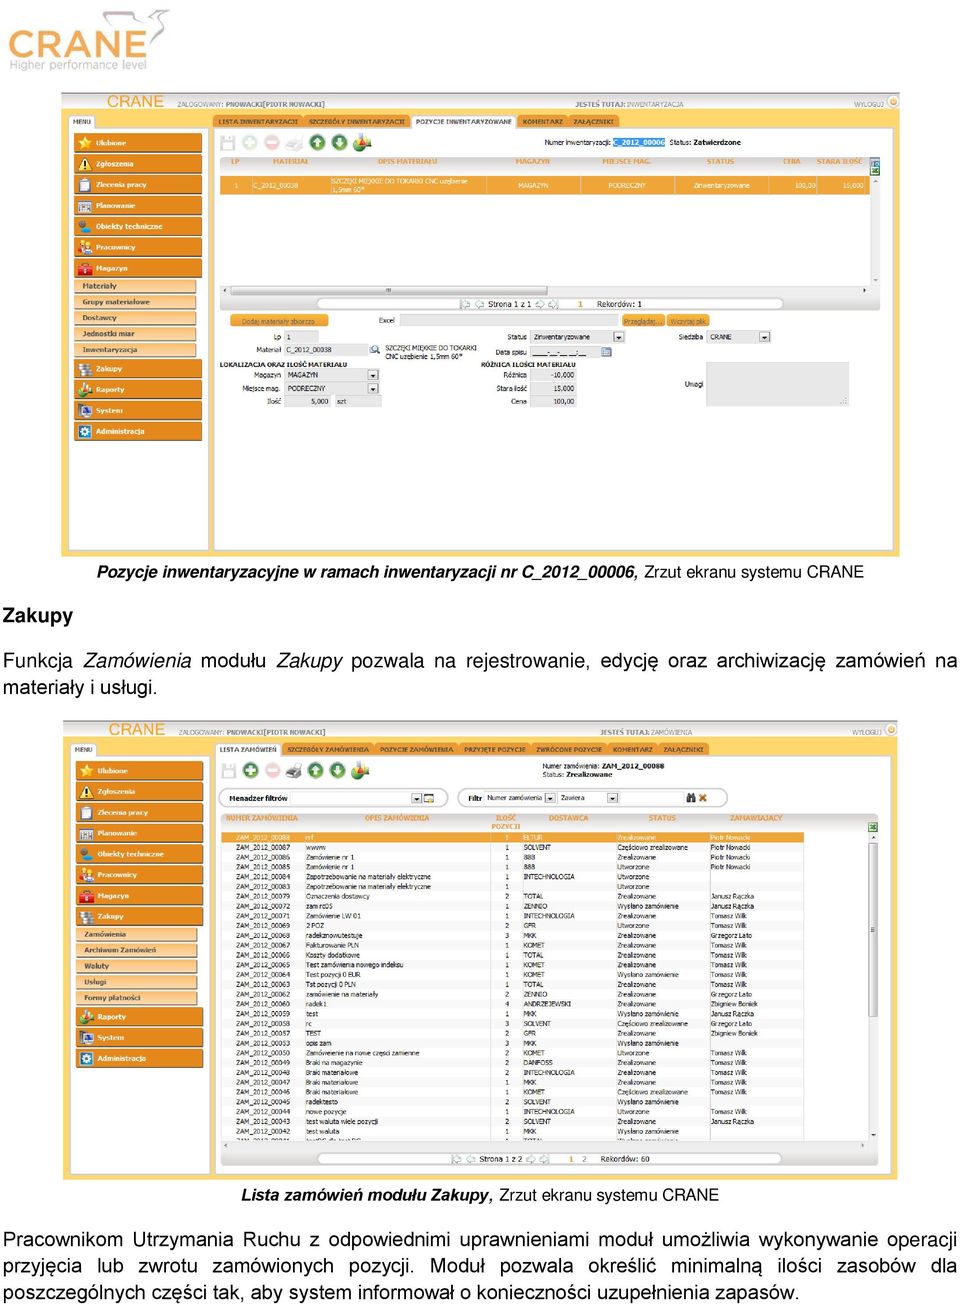 Lista zamówień modułu Zakupy, Zrzut ekranu systemu CRANE Pracownikom Utrzymania Ruchu z odpowiednimi uprawnieniami moduł umożliwia